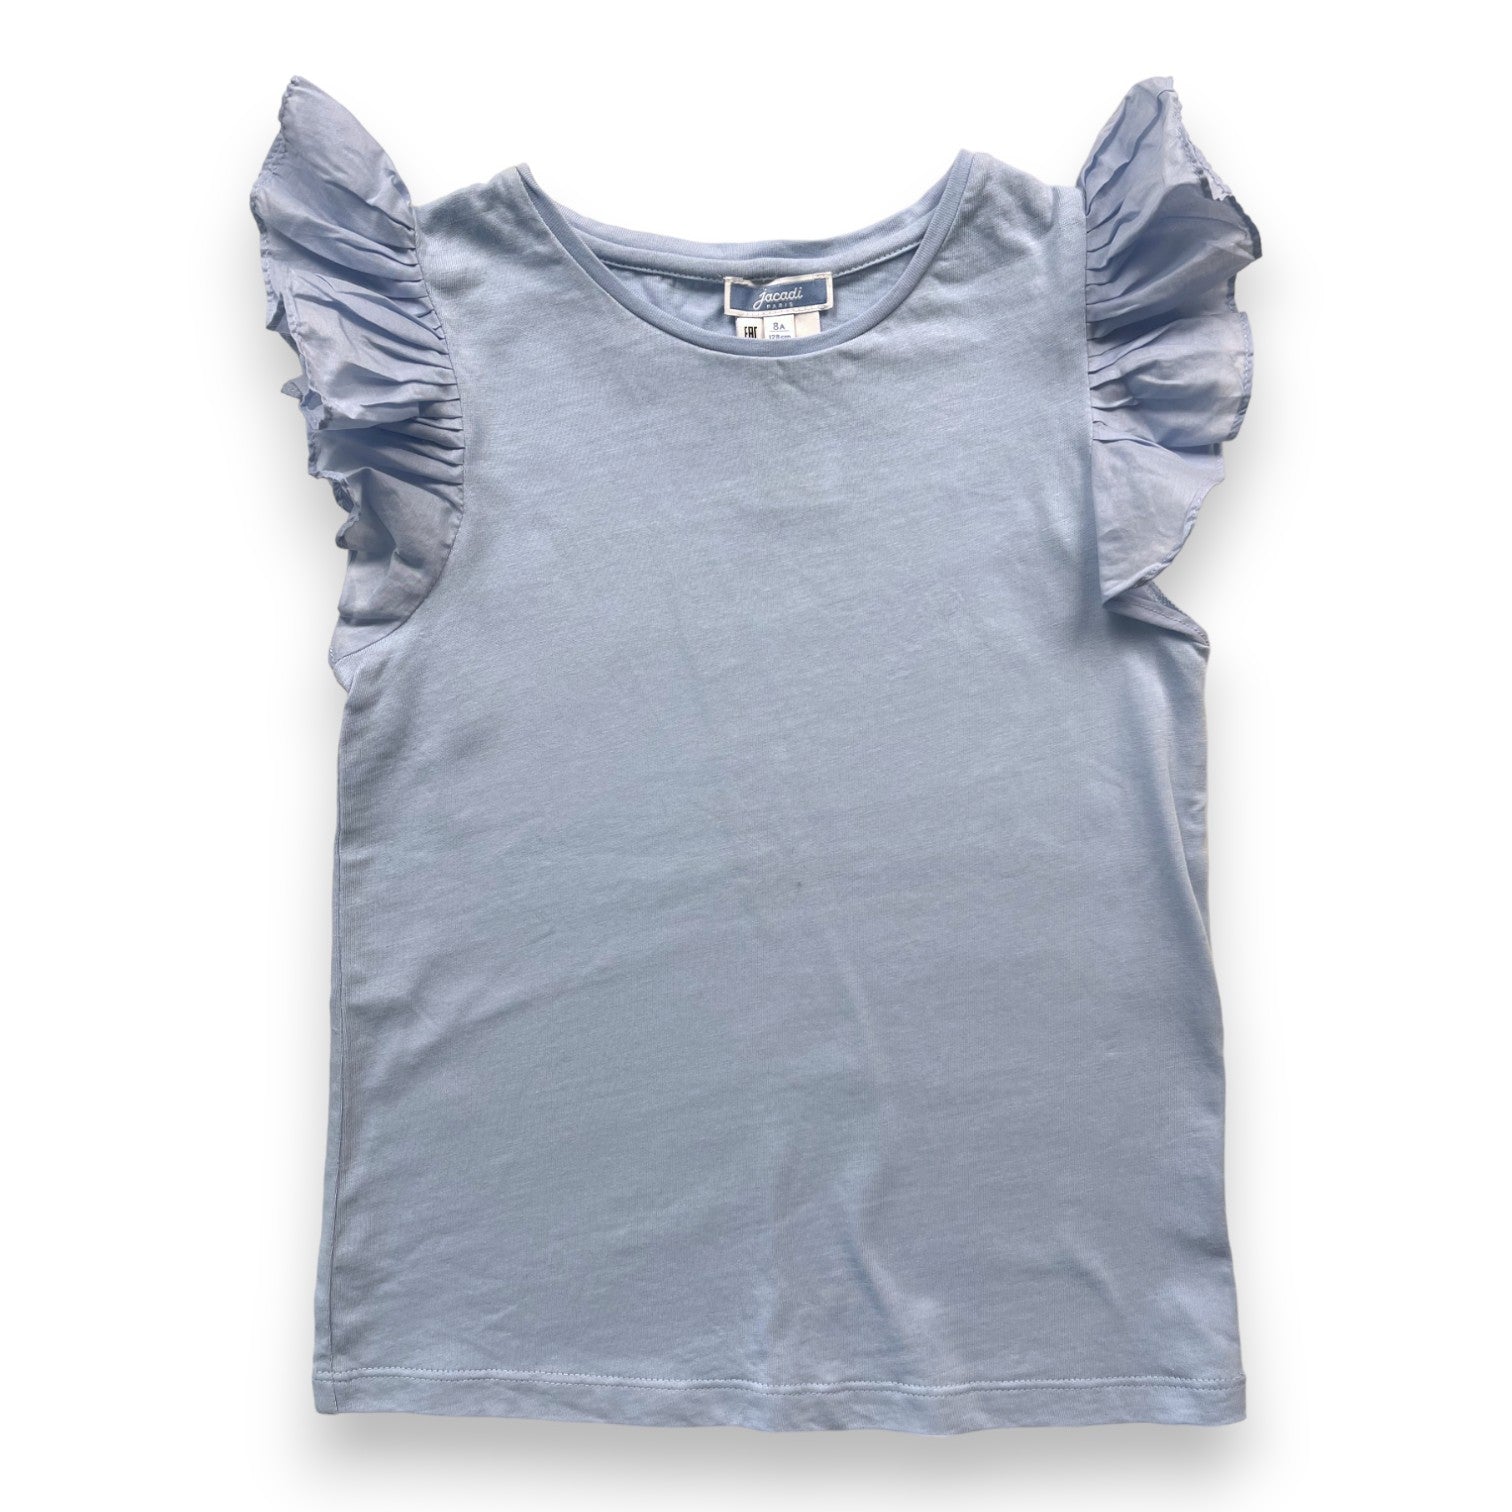 JACADI - T shirt bleu ciel manches volantées - 8 ans